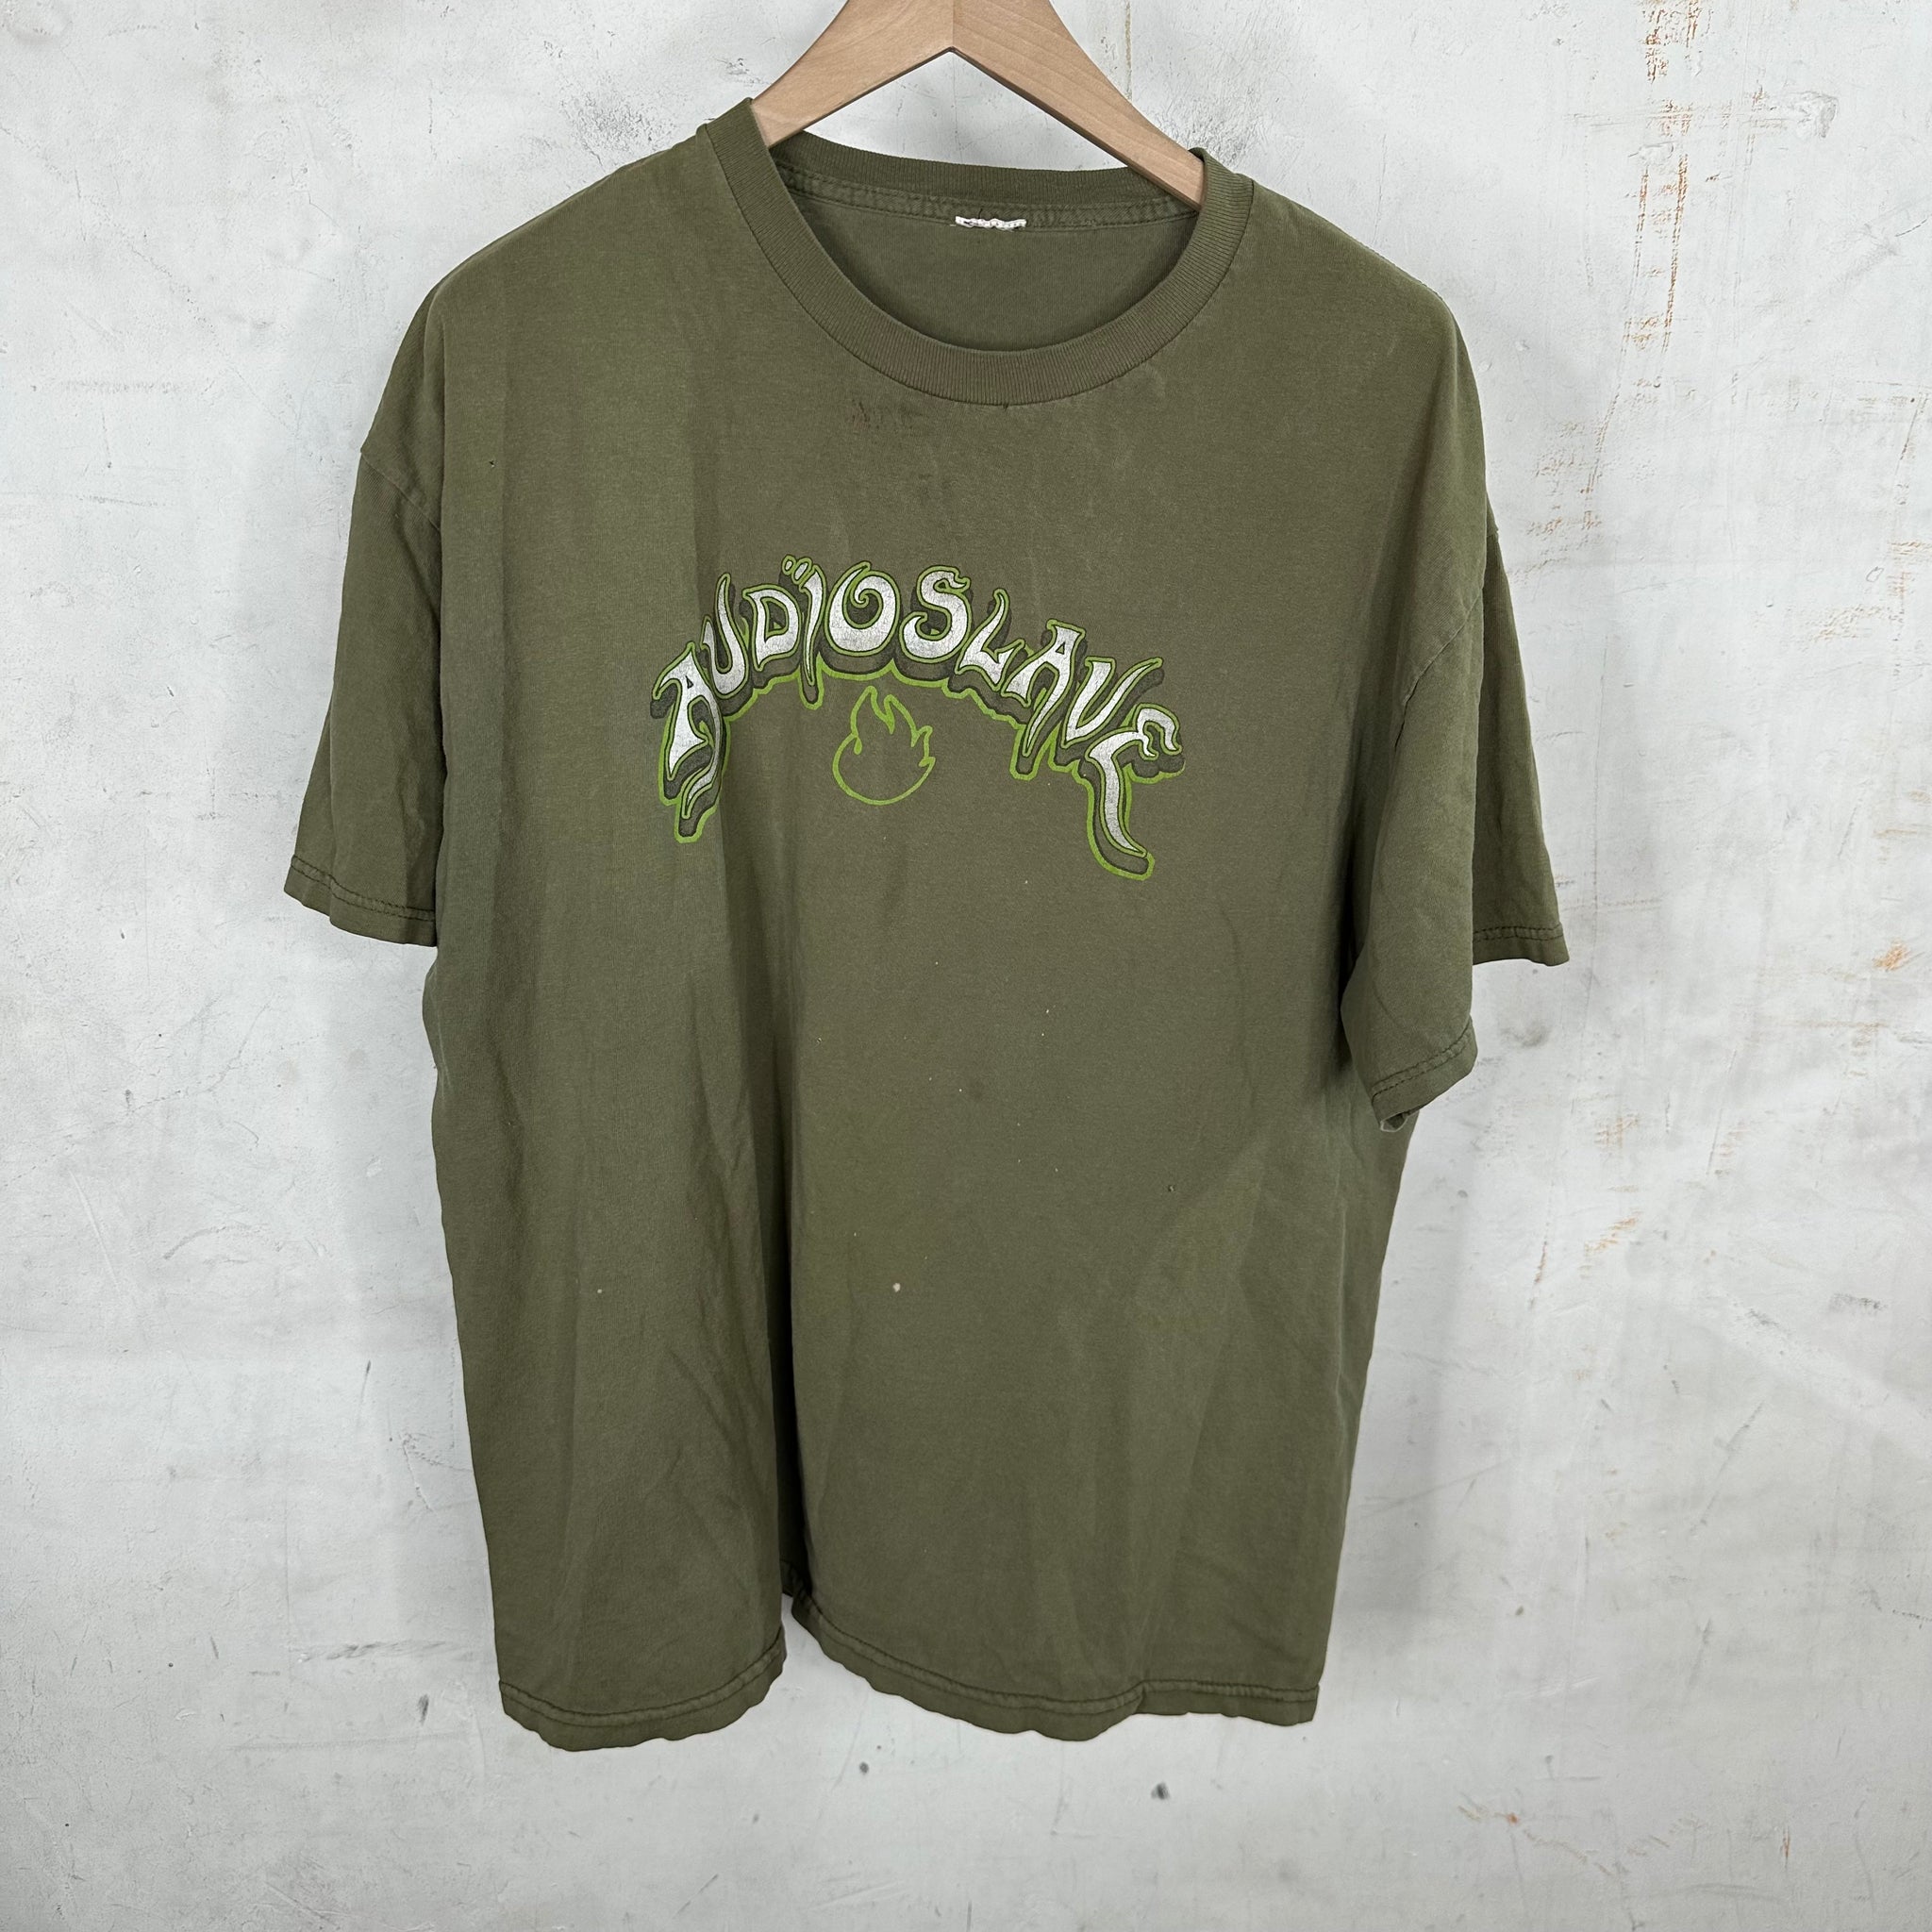 Vintage Audioslave T-Shirt